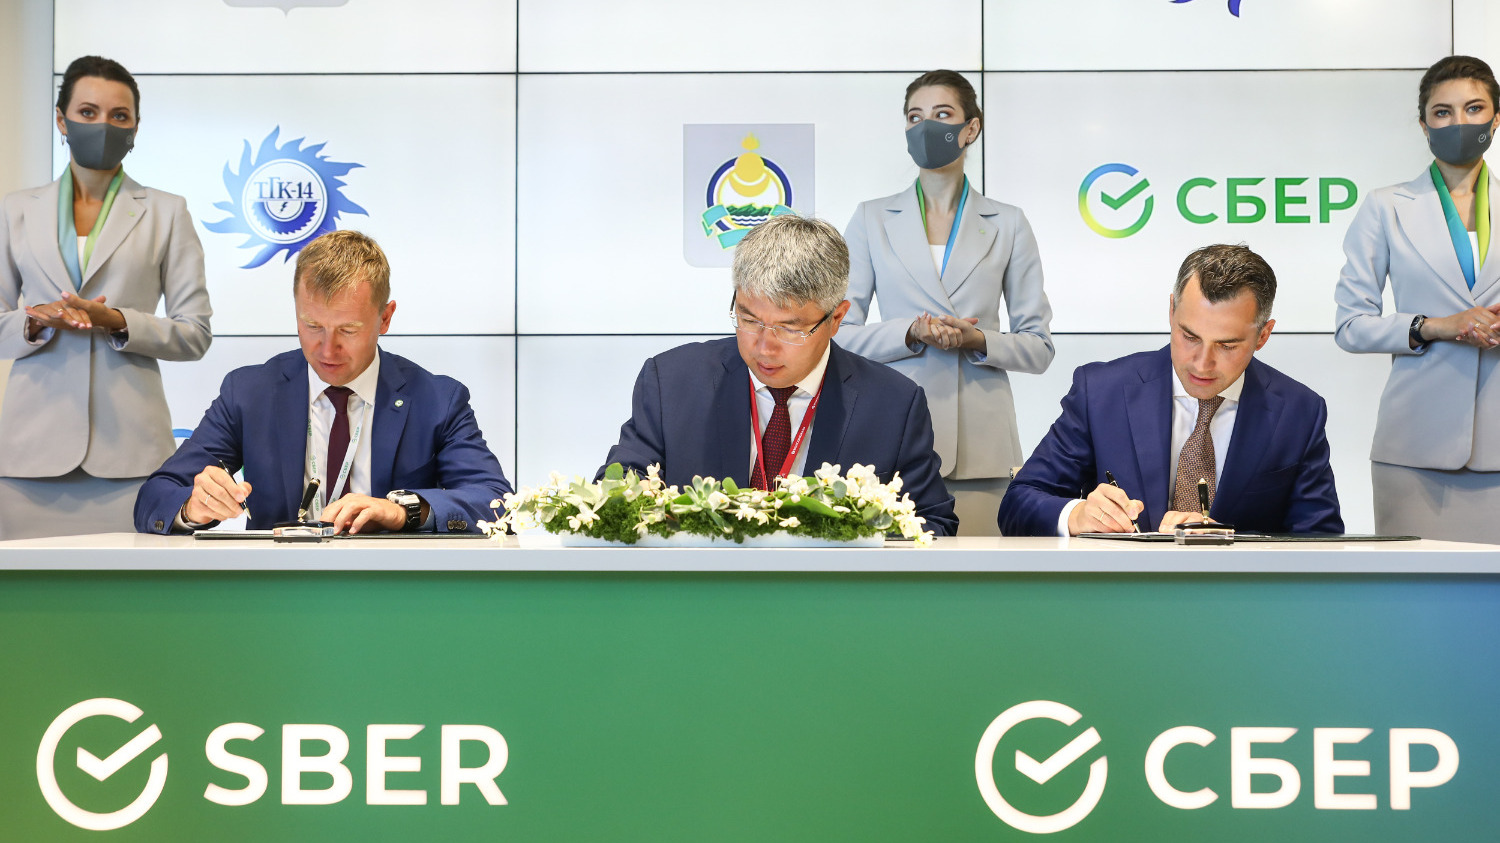 Сбербанк, Правительство Республики Бурятия и ПАО «Территориальная компания № 14» в рамках Восточного экономического форума заключили соглашение о намерениях по сотрудничеству в сфере ESG. 